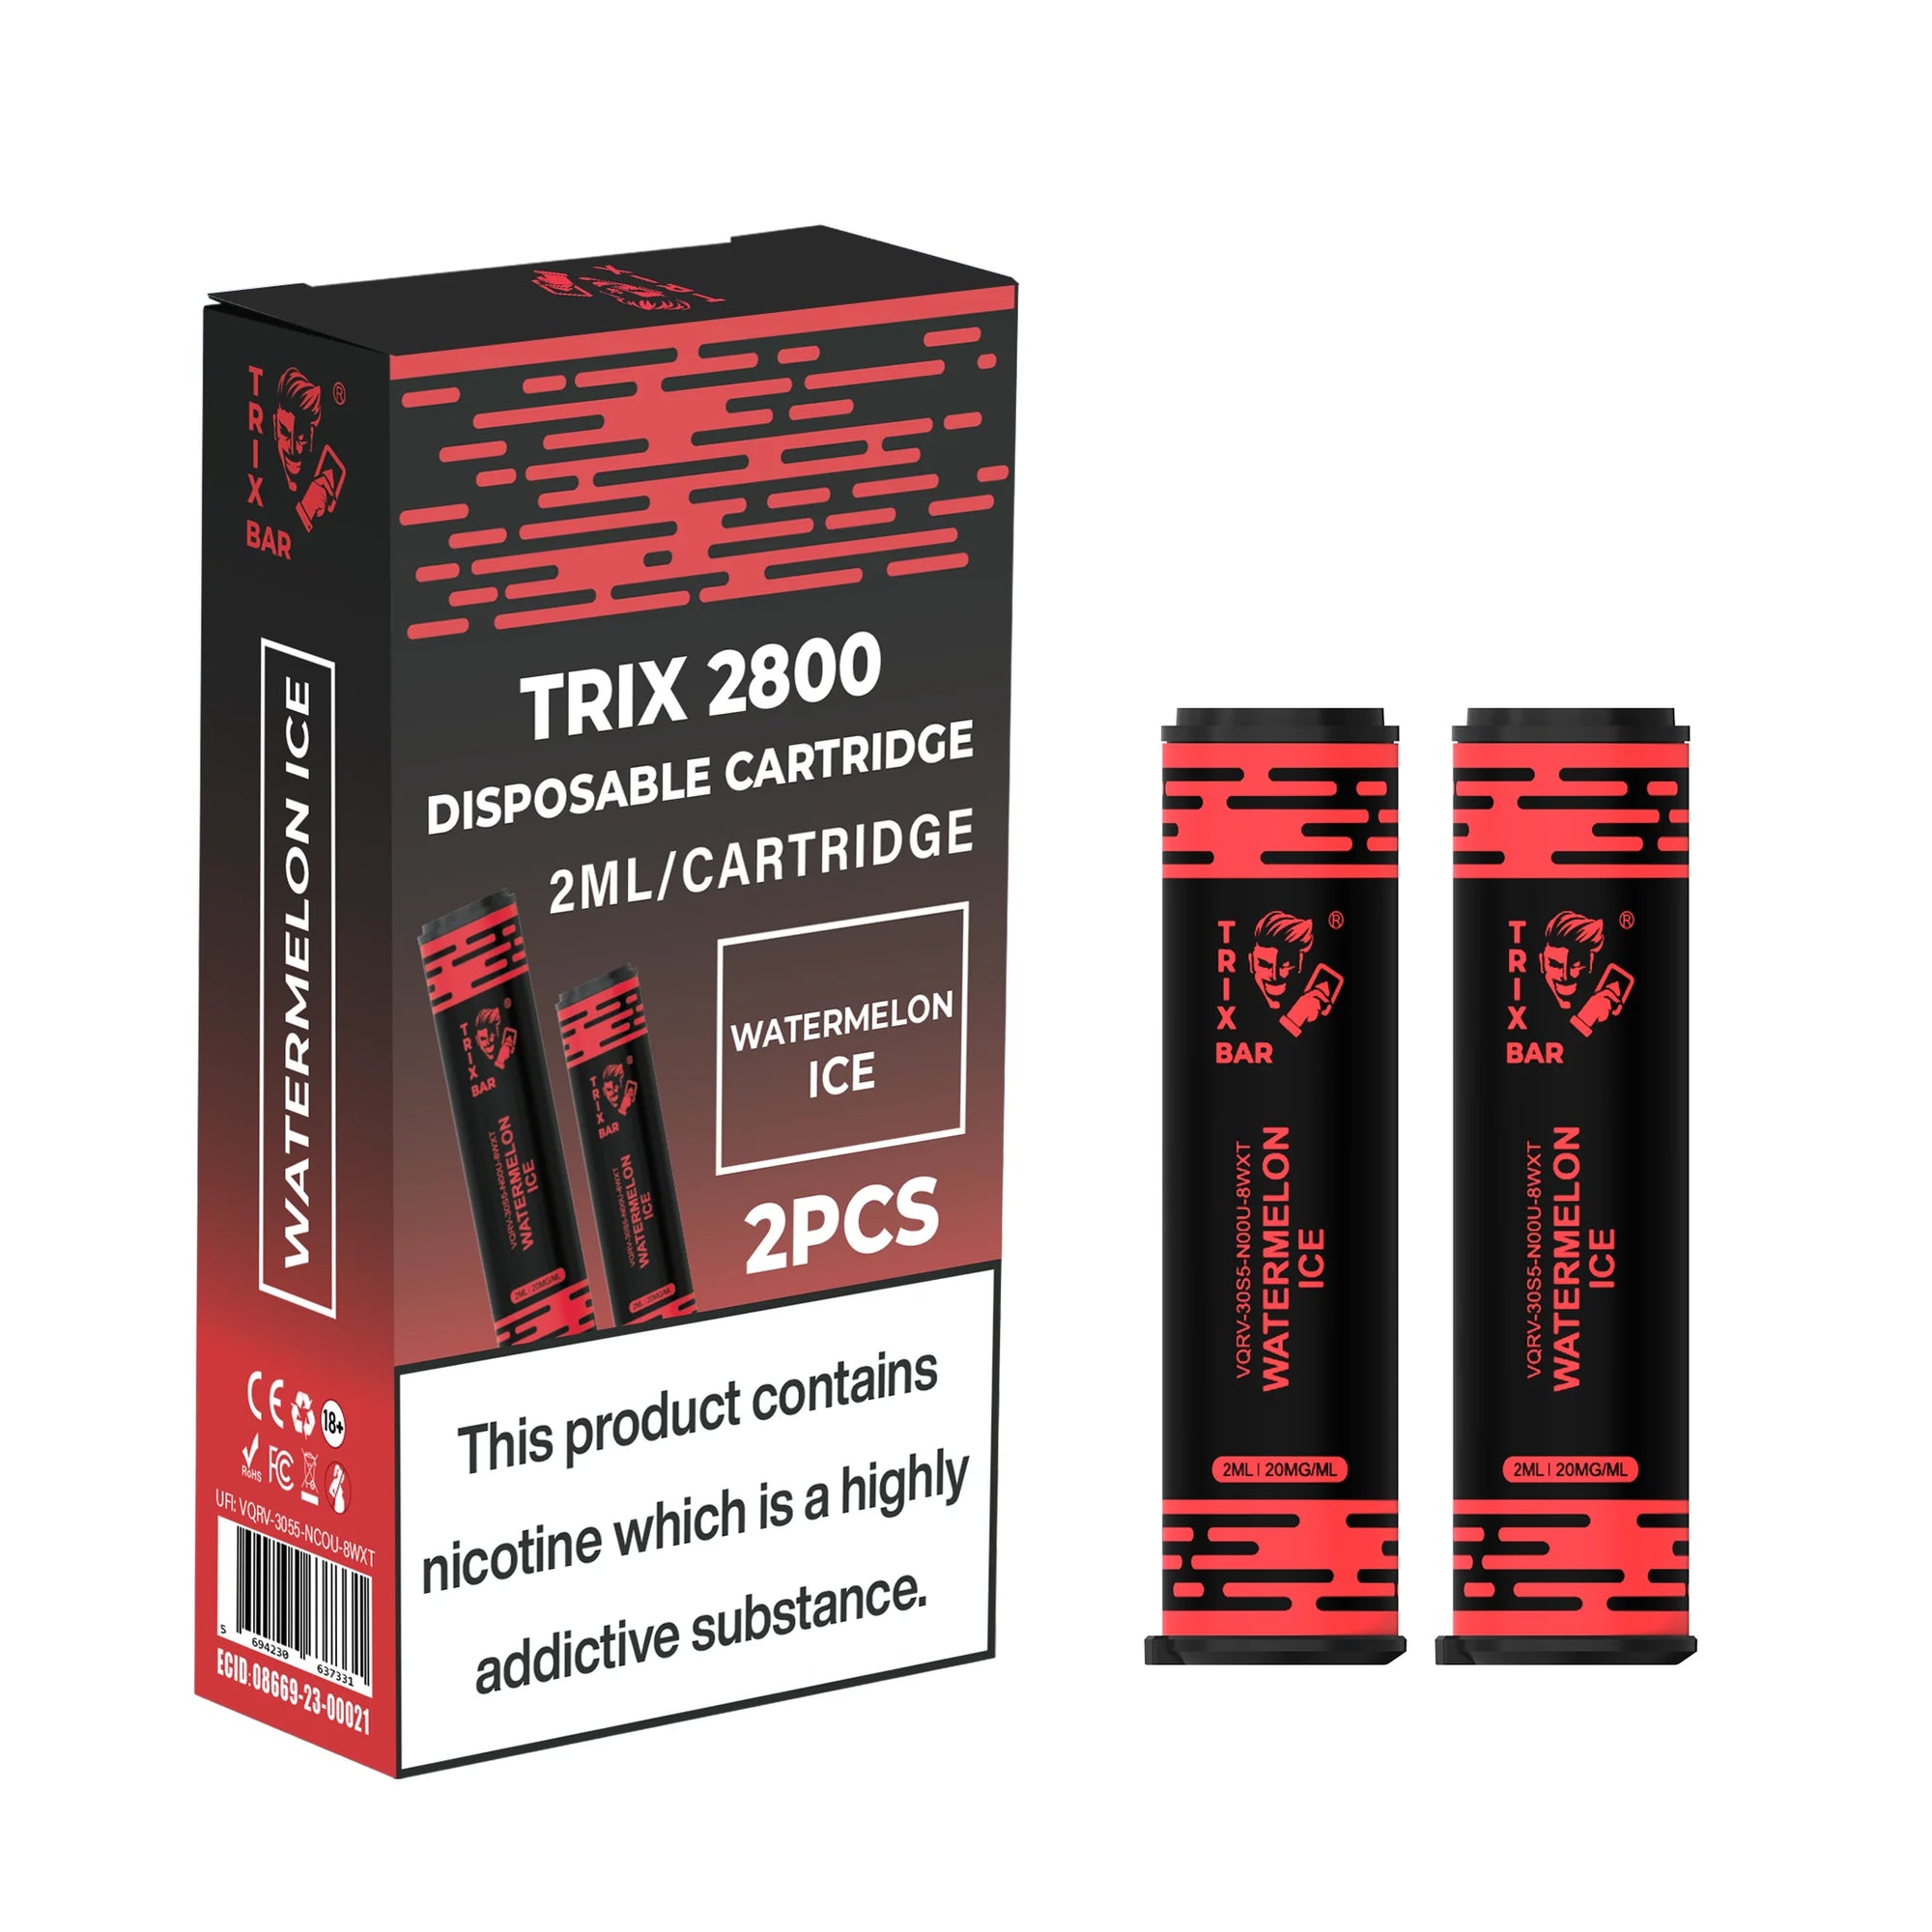 TRIX BAR MAX 2800 2x CARTRIDGES - Nammi.net